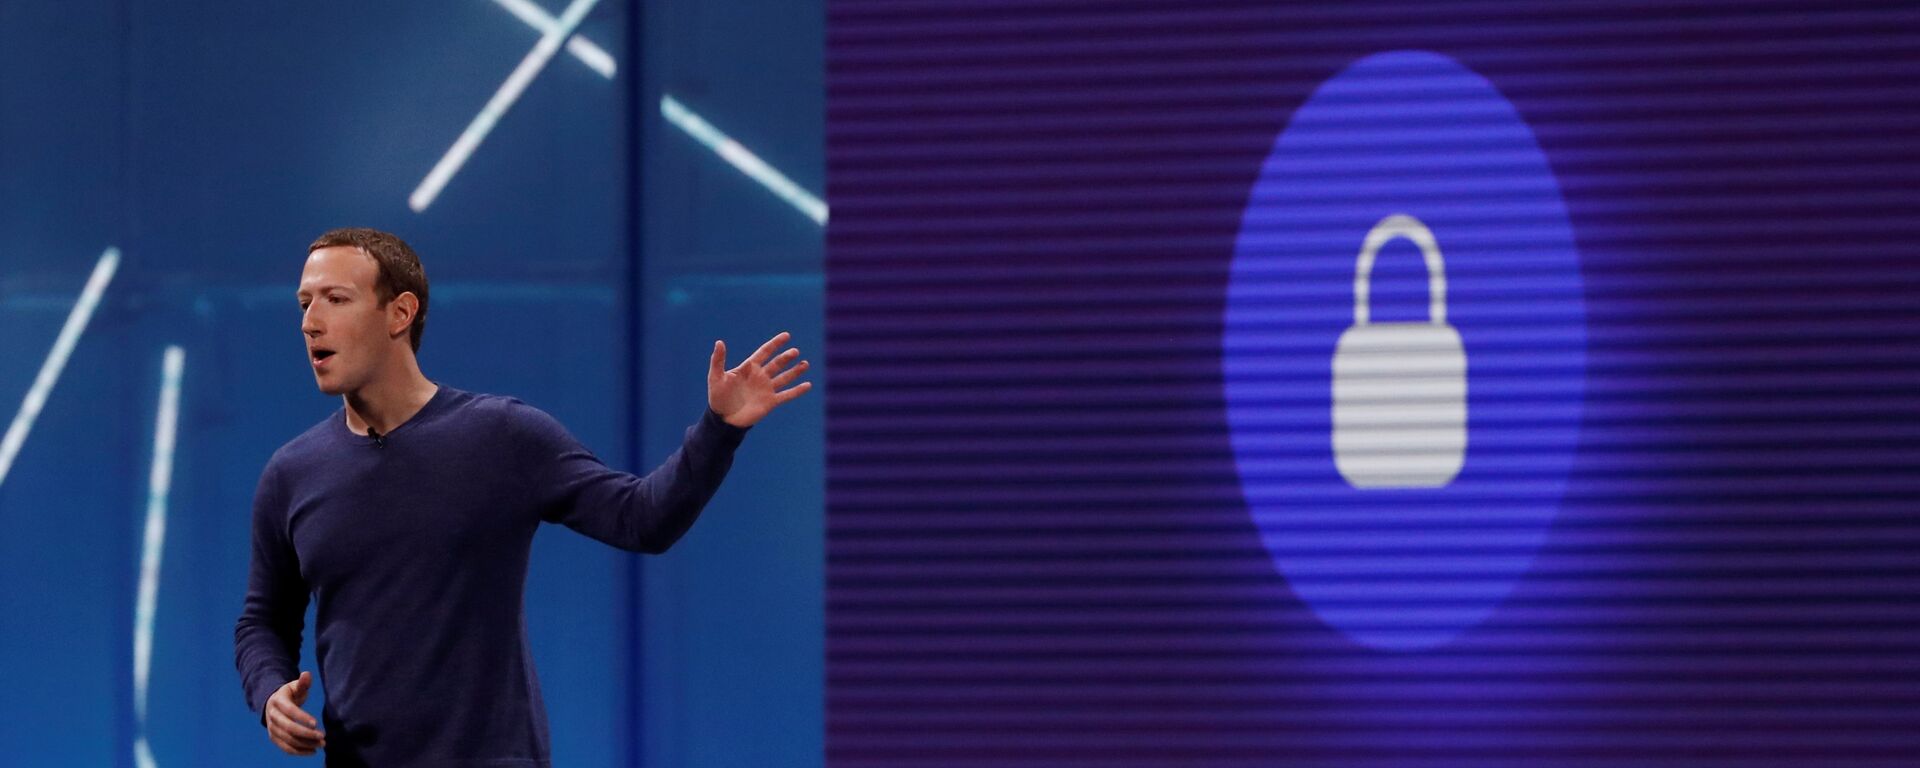 Kamuoyuna kullanıcı verilerini koruduklarına dair açıklamalar yapan Facebook CEO'su Mark Zuckerberg'in uzun yıllardır en üst düzey yöneticileriyle kullanıcı verilerine erişimi pazarlamaya dair planları ele aldığı belirtildi. - Sputnik Türkiye, 1920, 17.04.2019